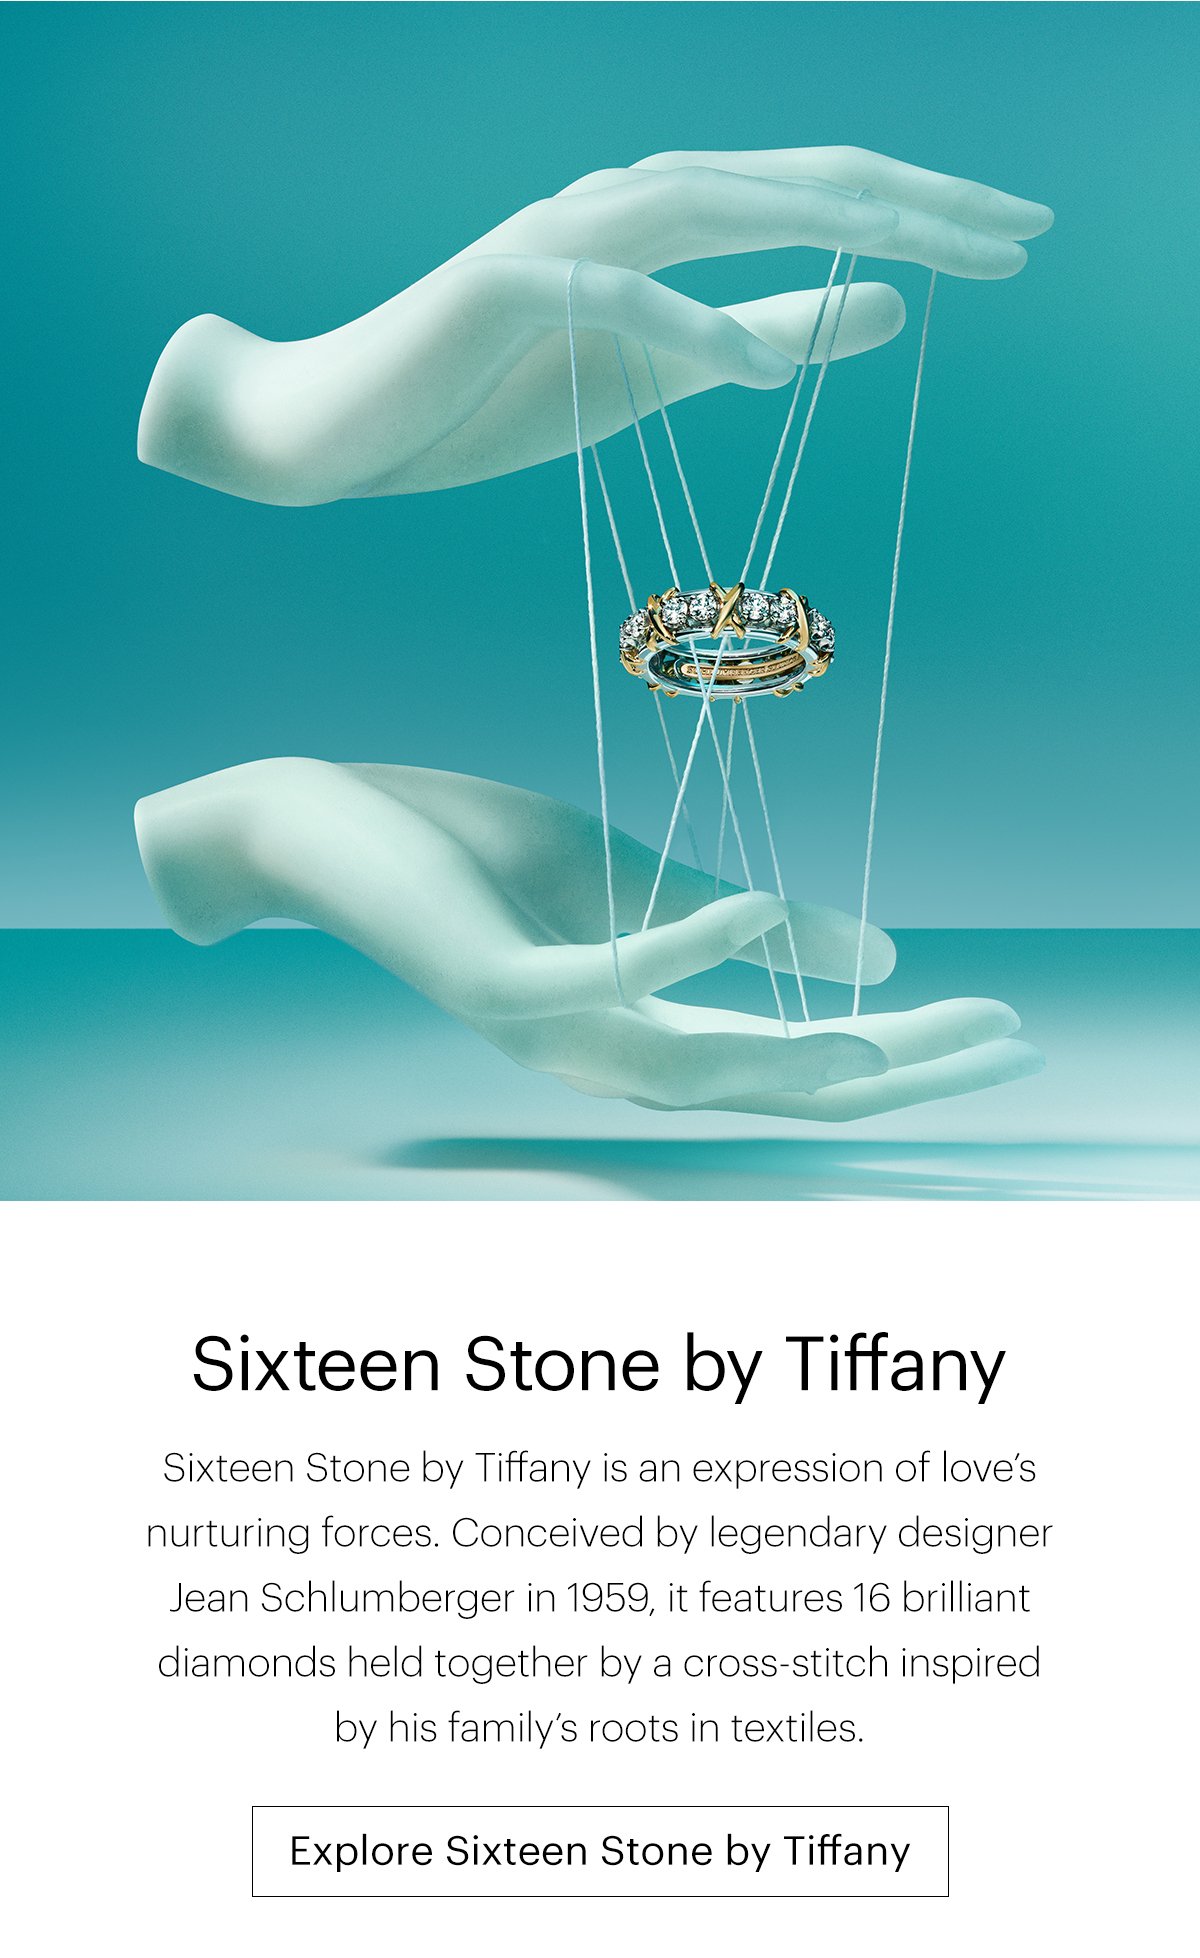 Explore Sixteen Stone by Tiffany